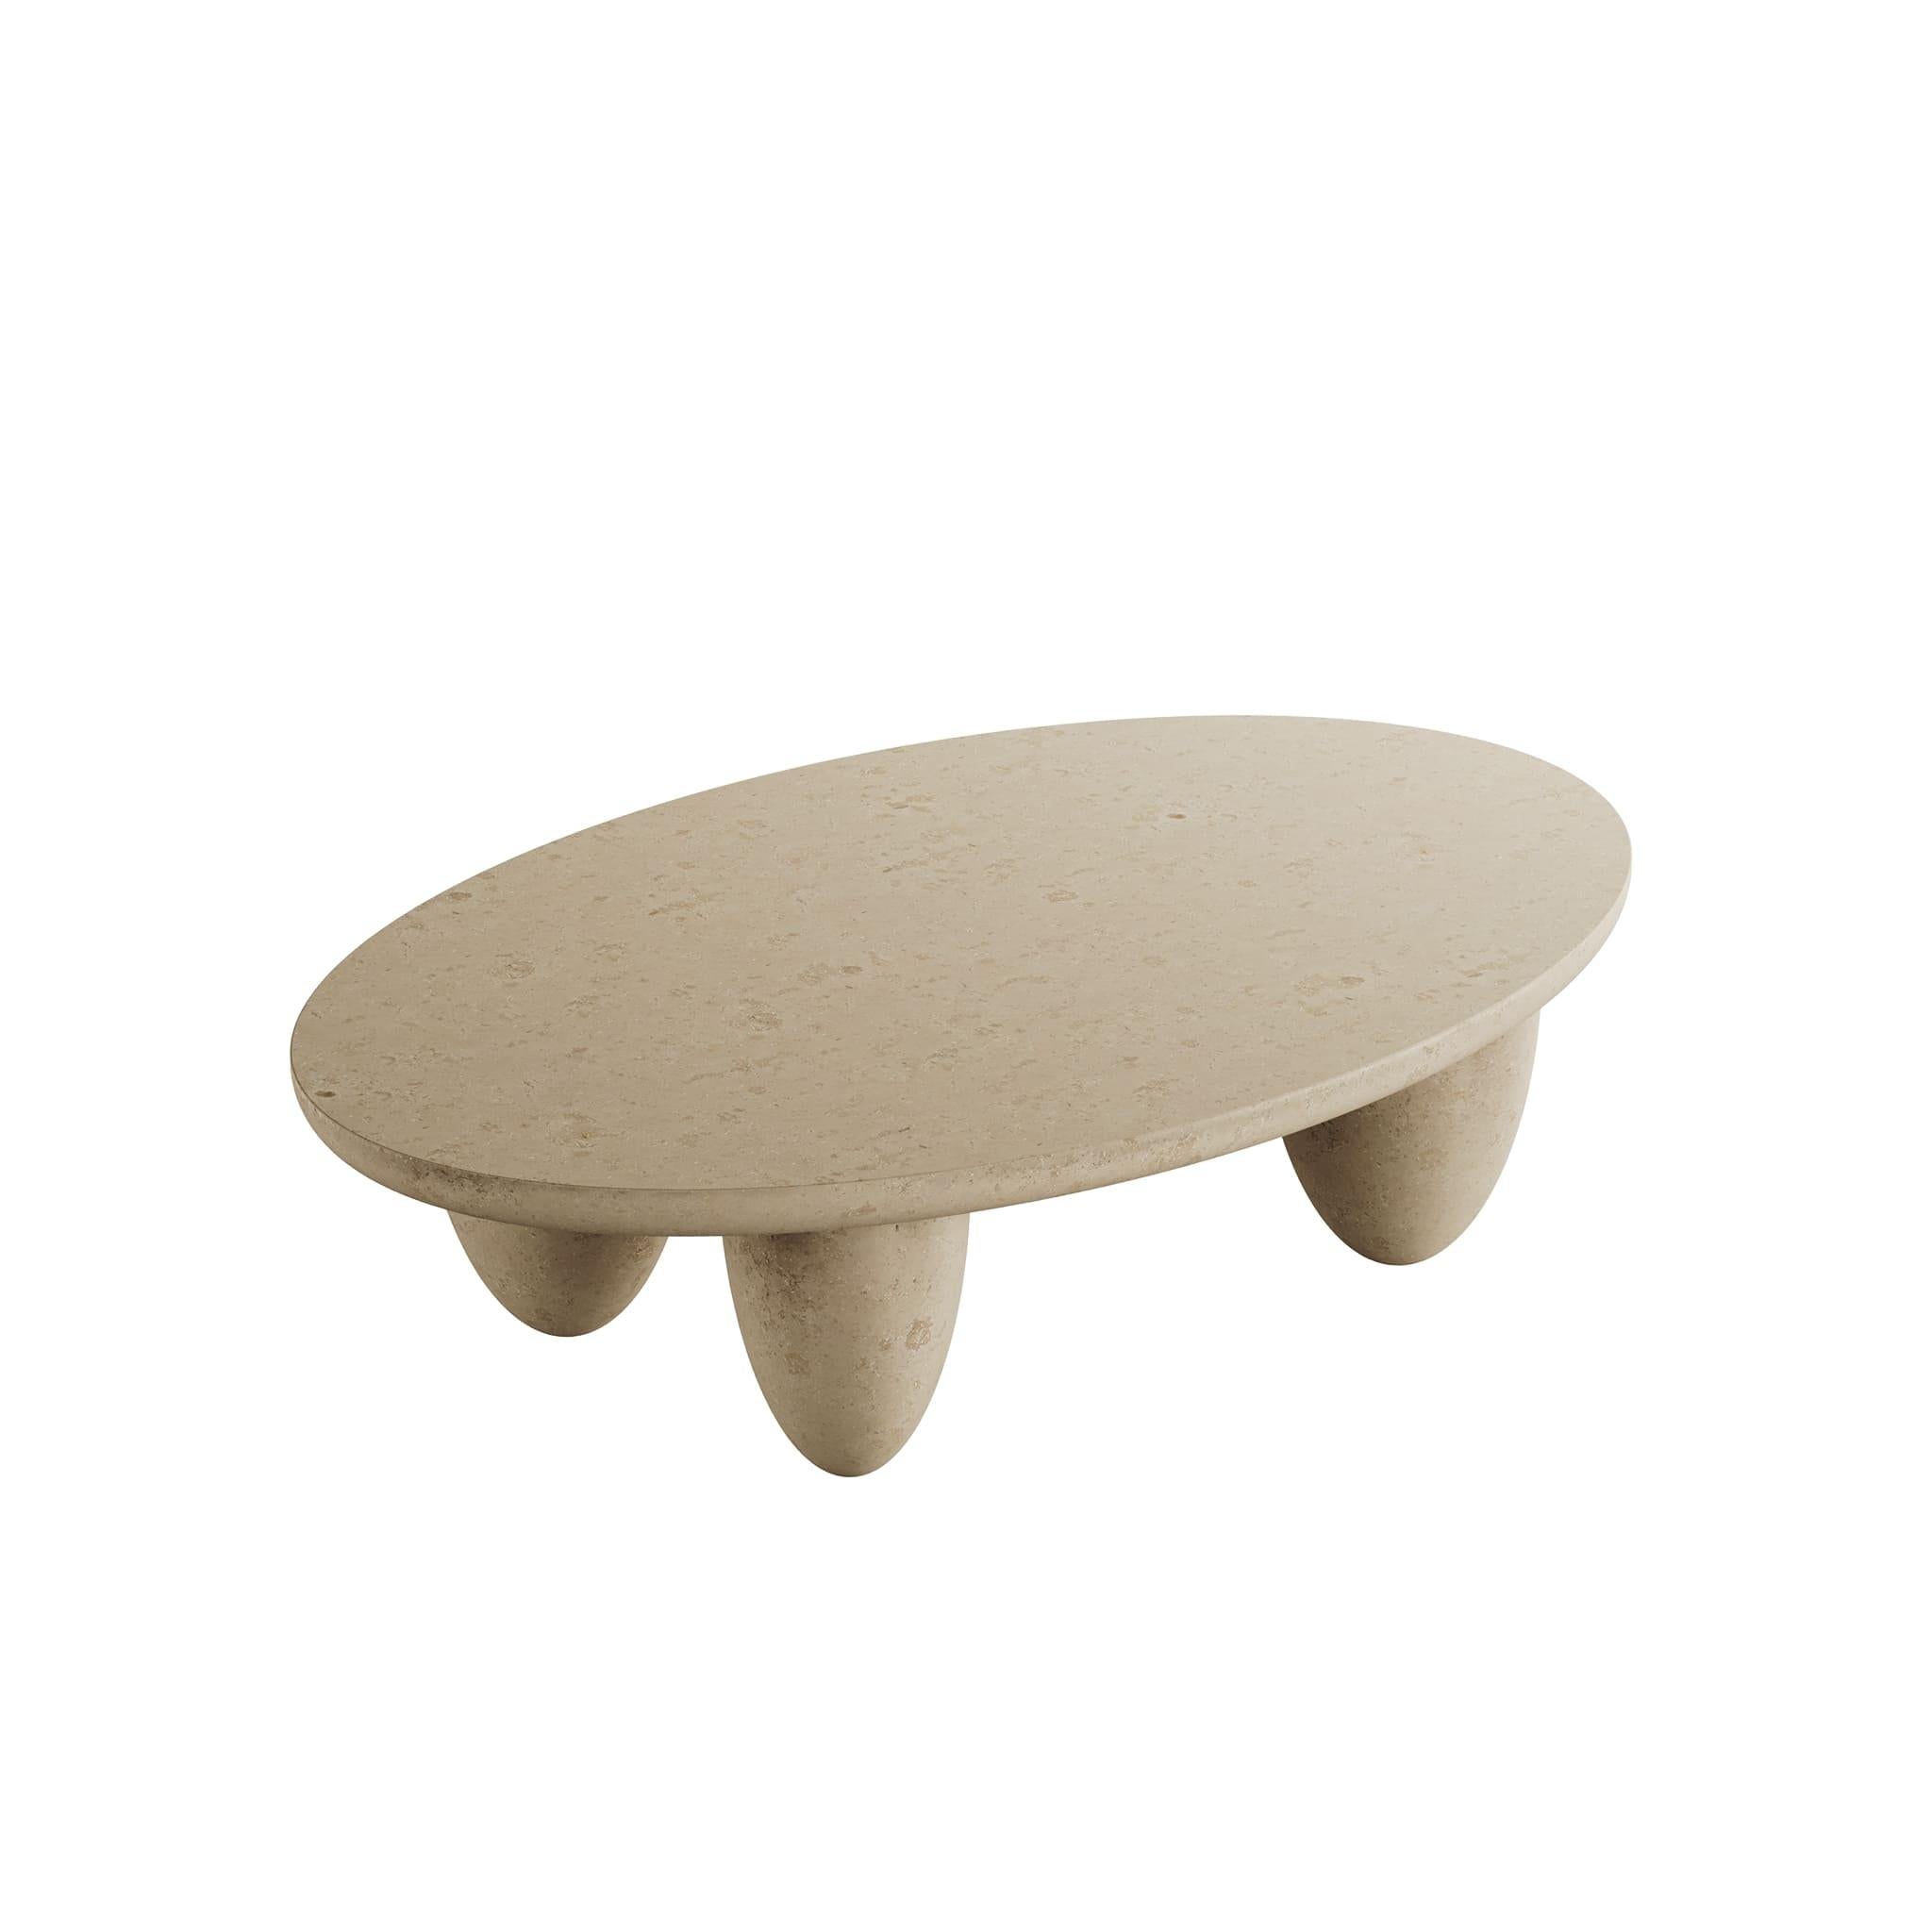 Lunarys Center Table Natural ist ein herausragendes Stück modernen Designs. Die üppige Anatomie und die weiche Textur des Outdoor-Mitteltisches sind perfekt für Projekte im Innen- und Außenbereich. Der Lunarys Center Table Natural mit seinen klaren